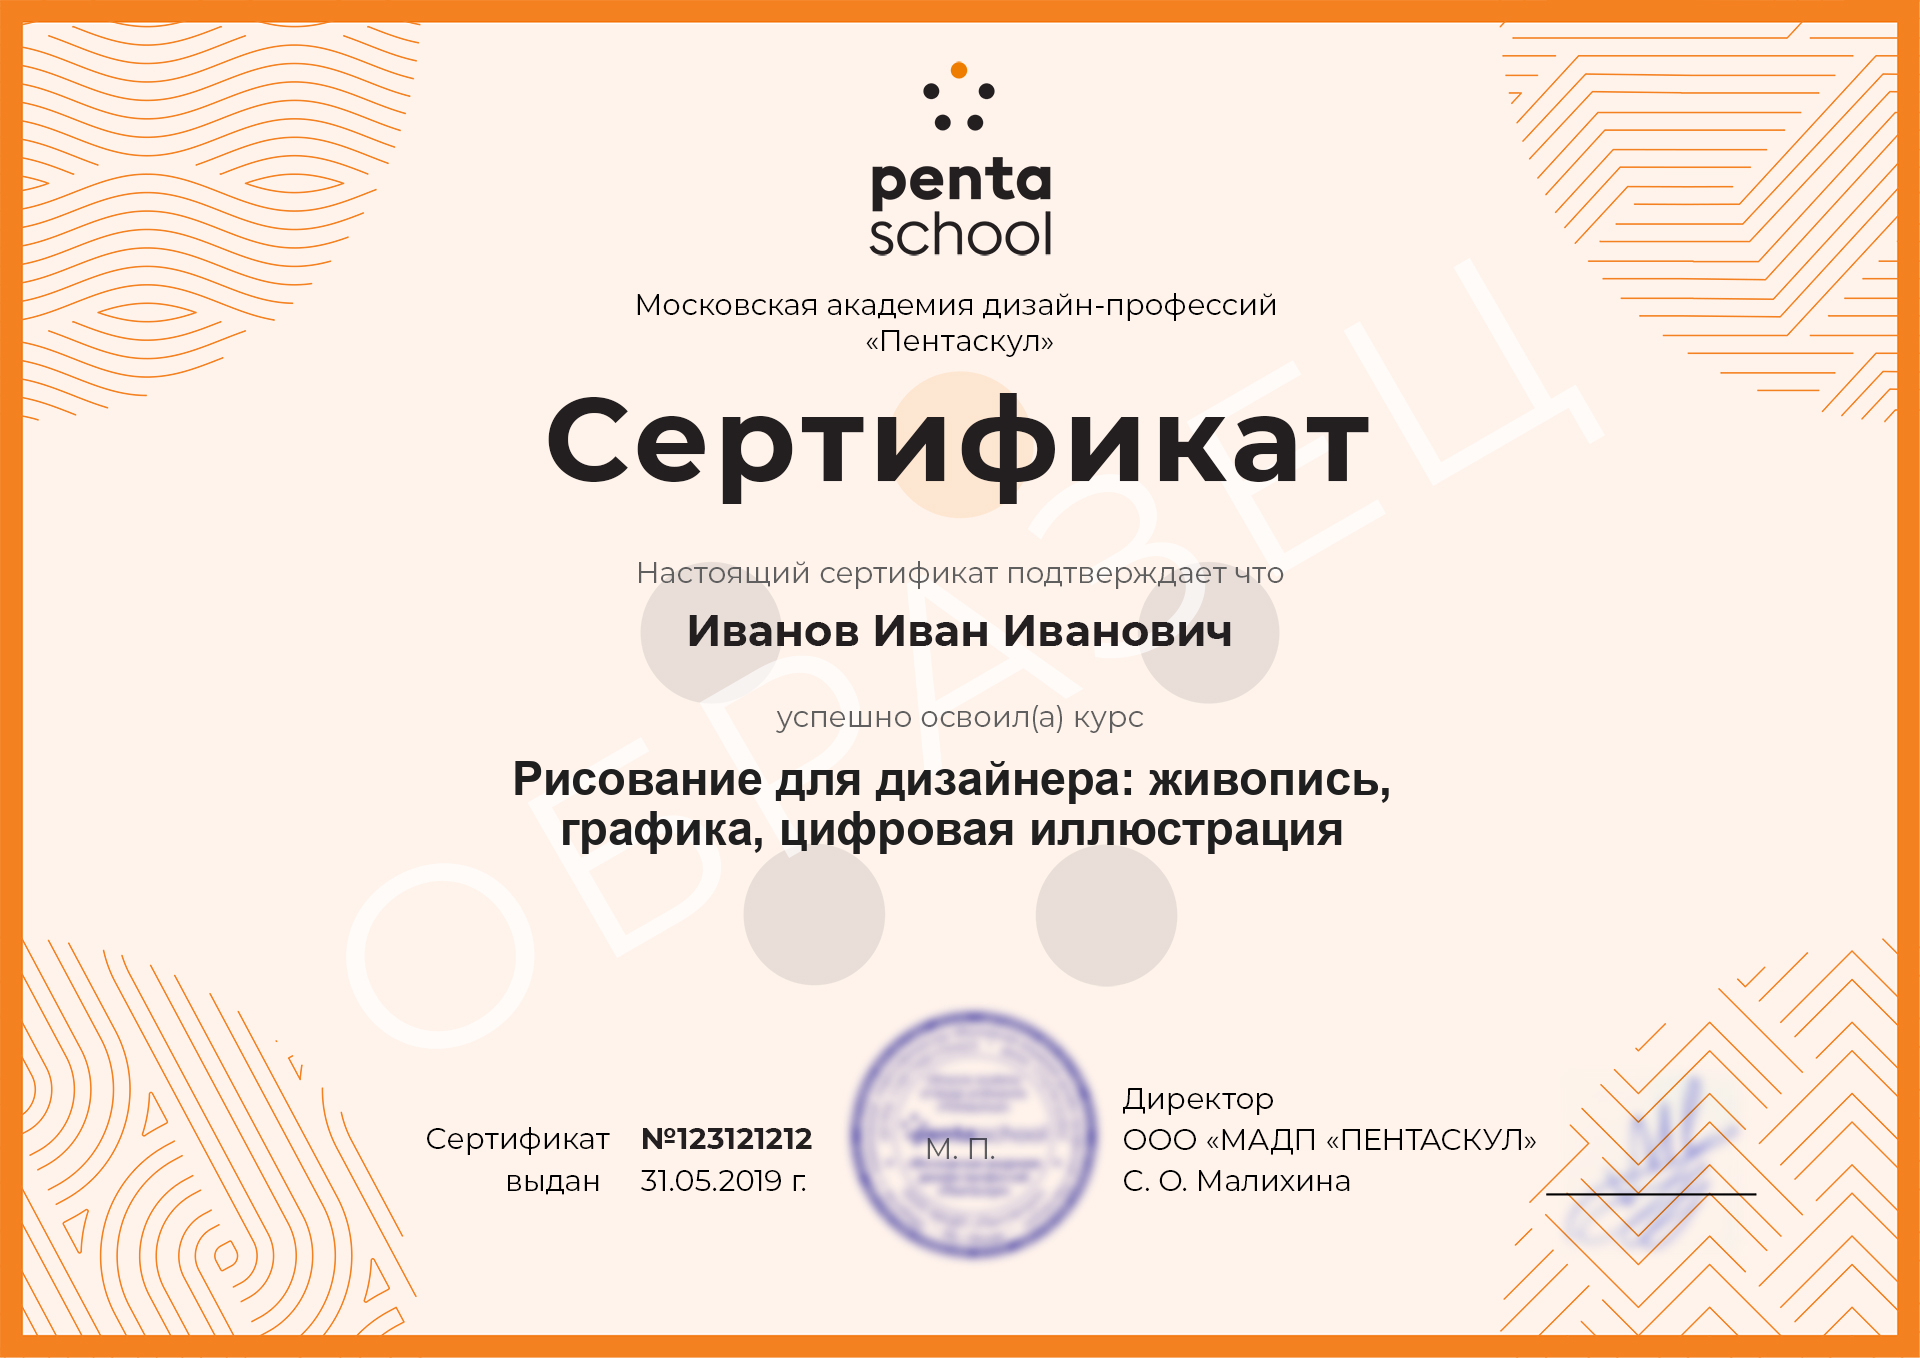 Сертификат – Рисование: от основ к цифровым техникам